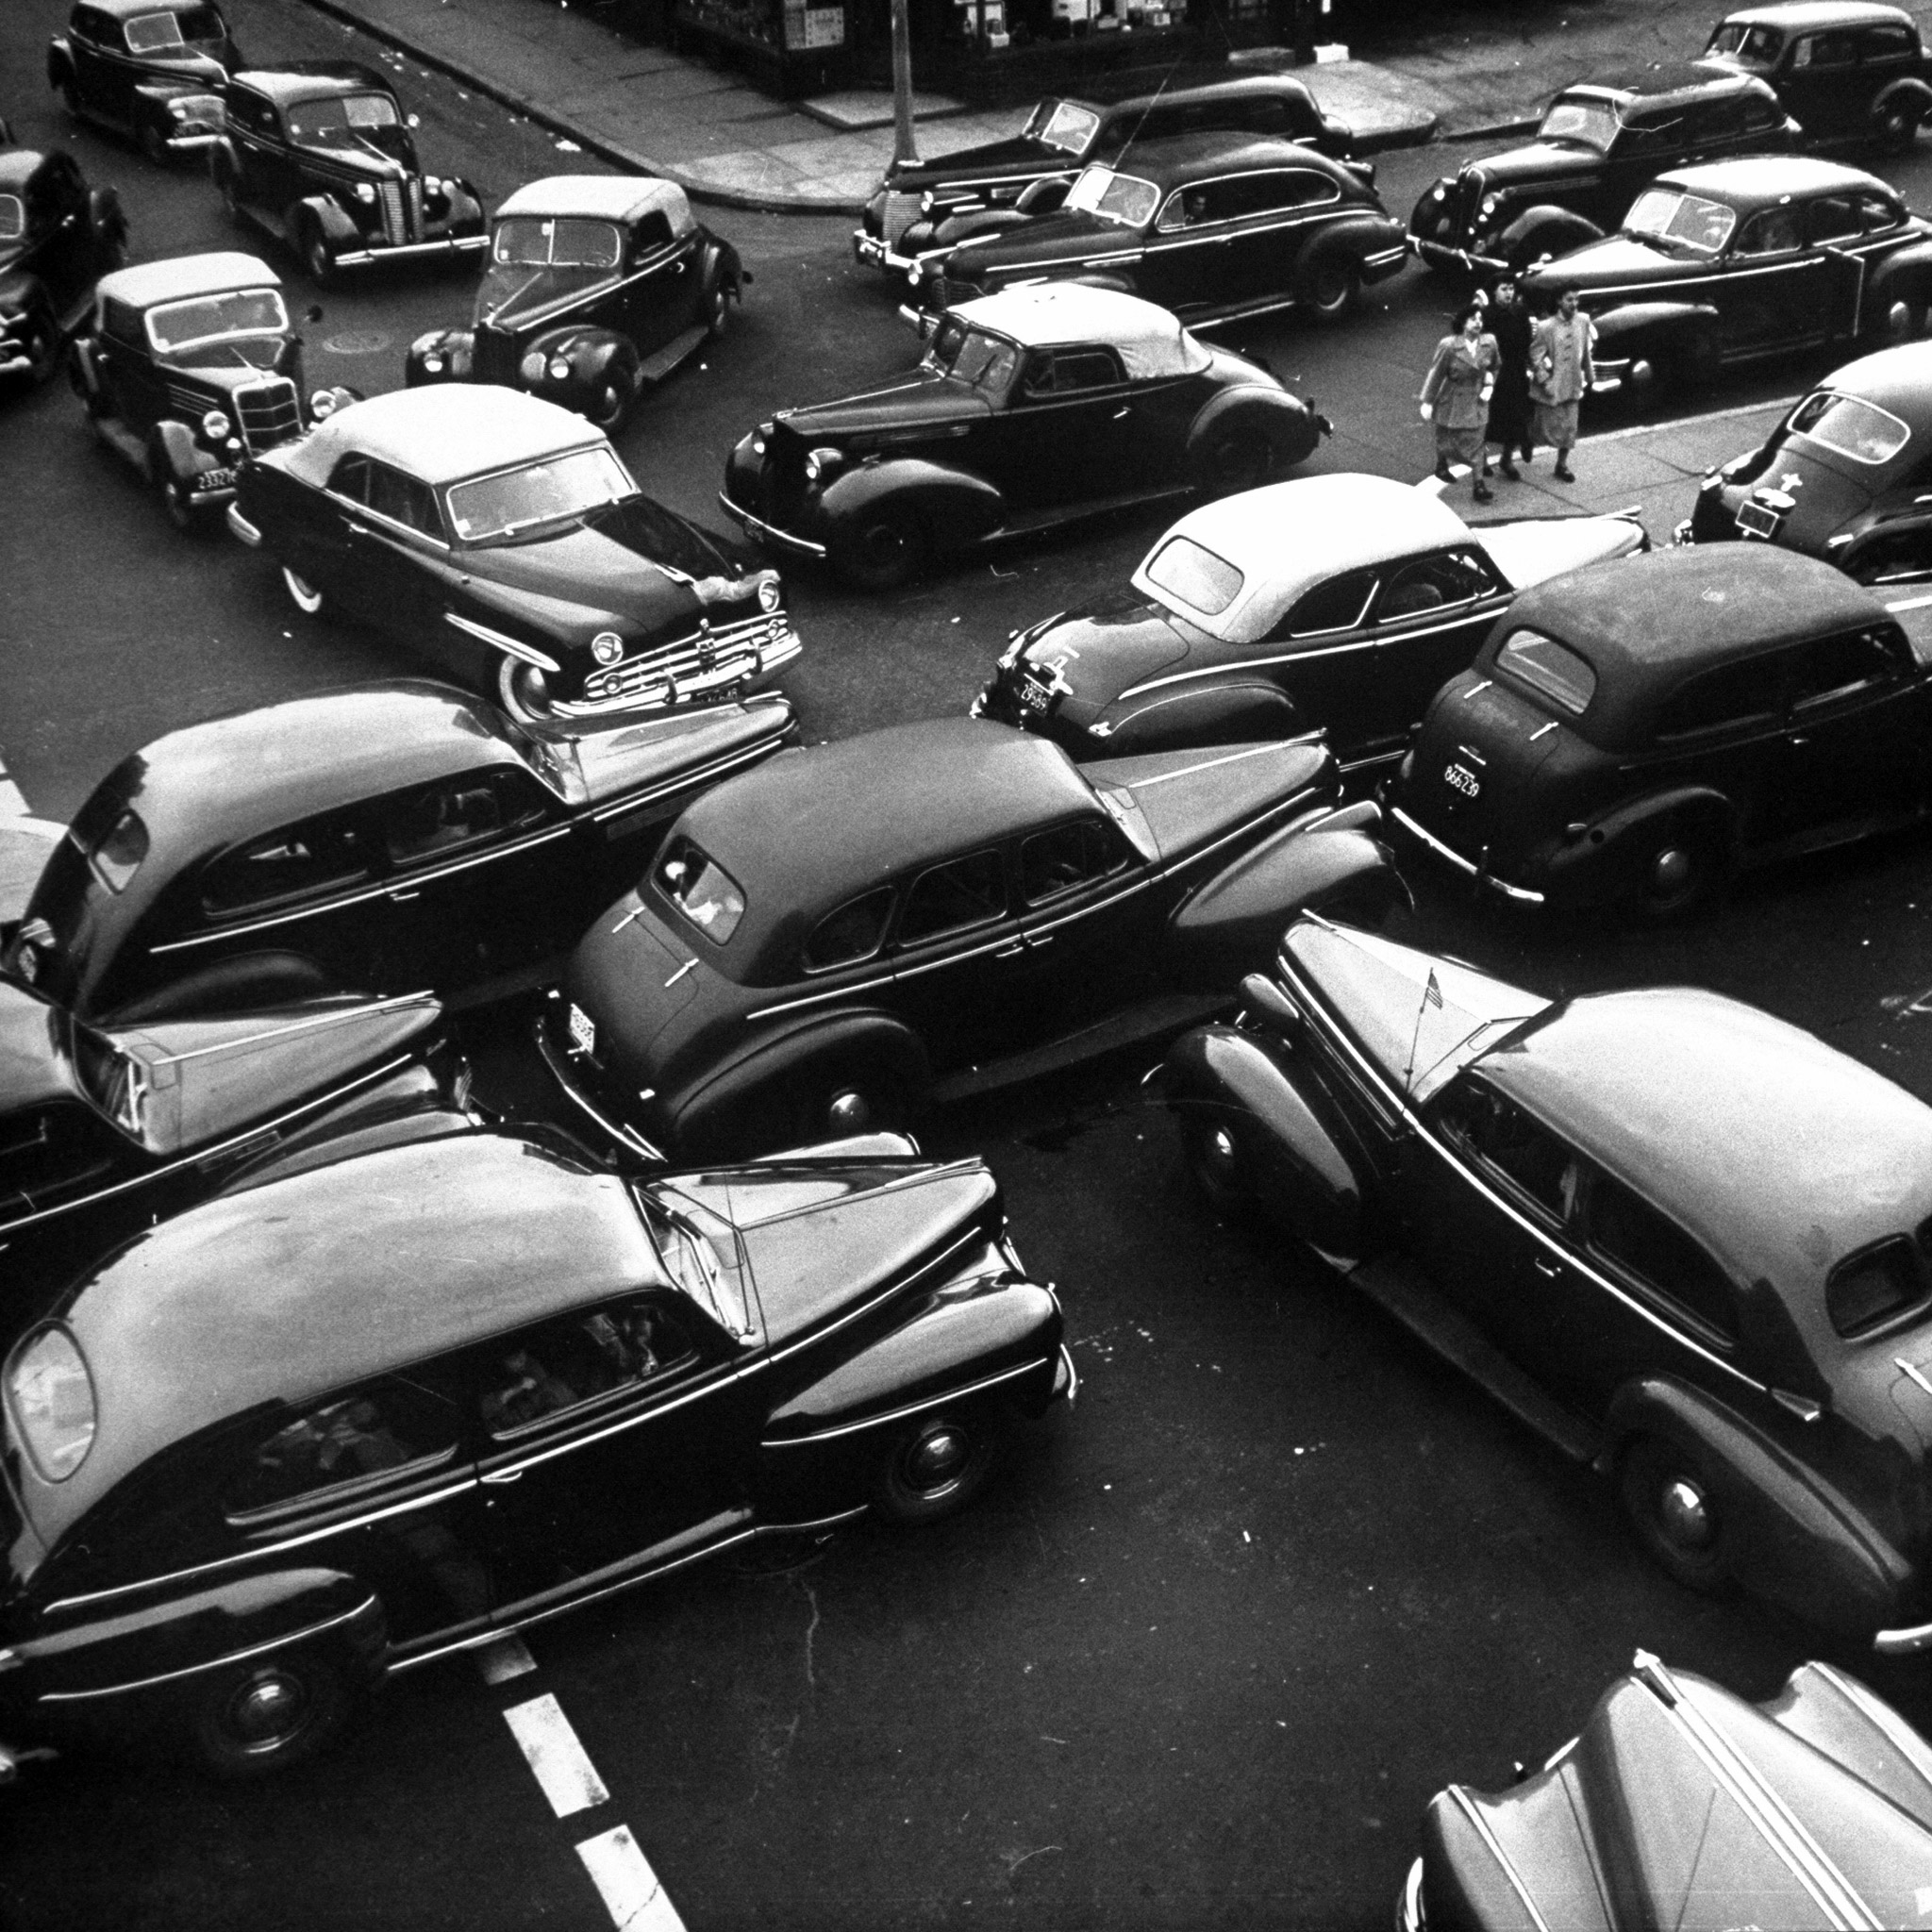 Traffic jams on Memorial Day weekend in 1949.